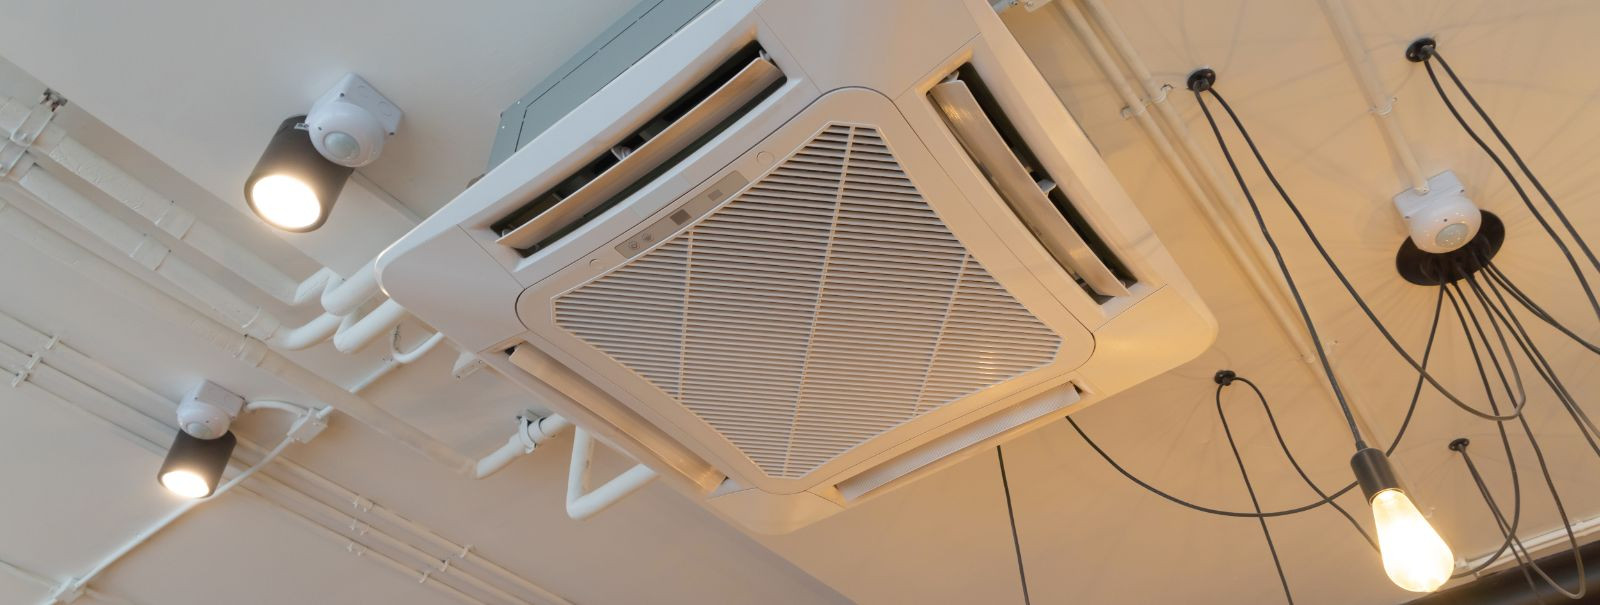 Ventilaatorite hooldamine on oluline, et tagada nende tõhus töö, pikem eluiga ja tervislik sisekliima. Regulaarne hooldus aitab vältida ootamatuid rikkeid, sääs